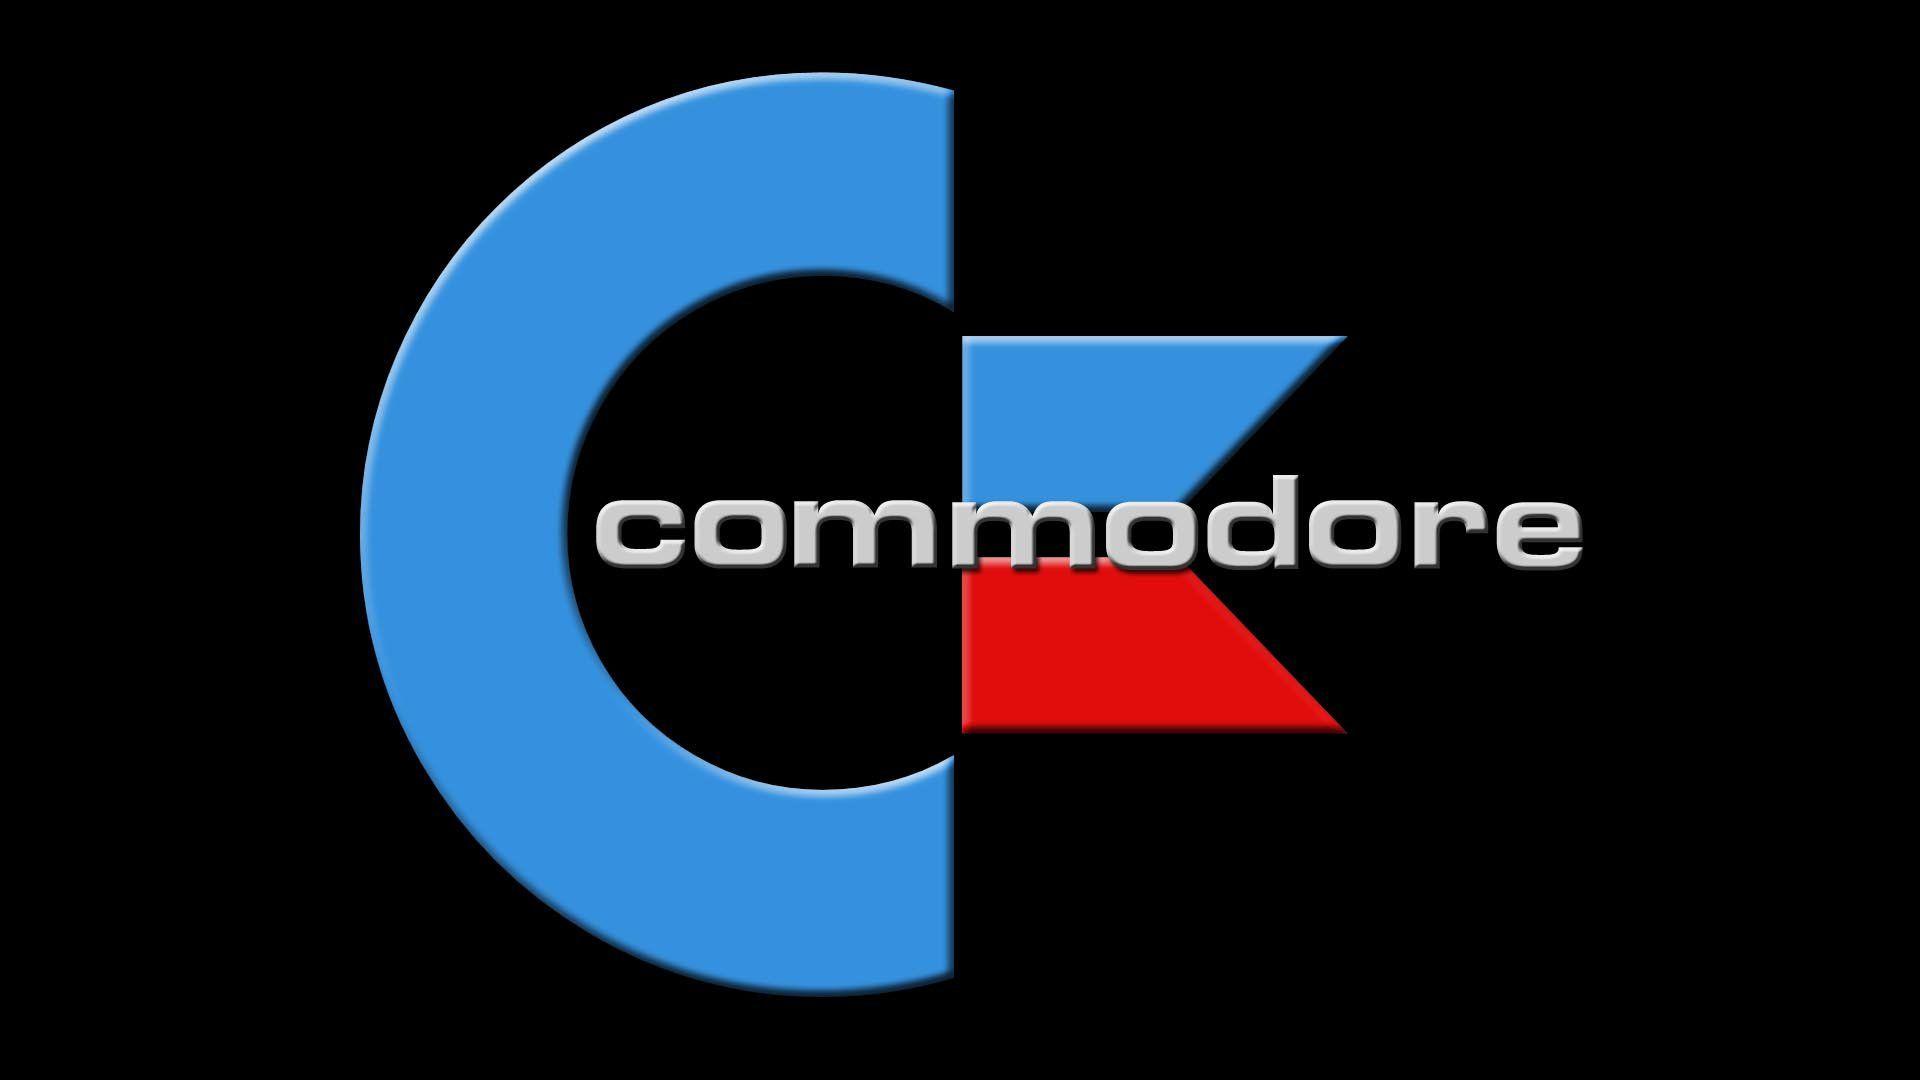 Commodore Logo - Commodore Logos